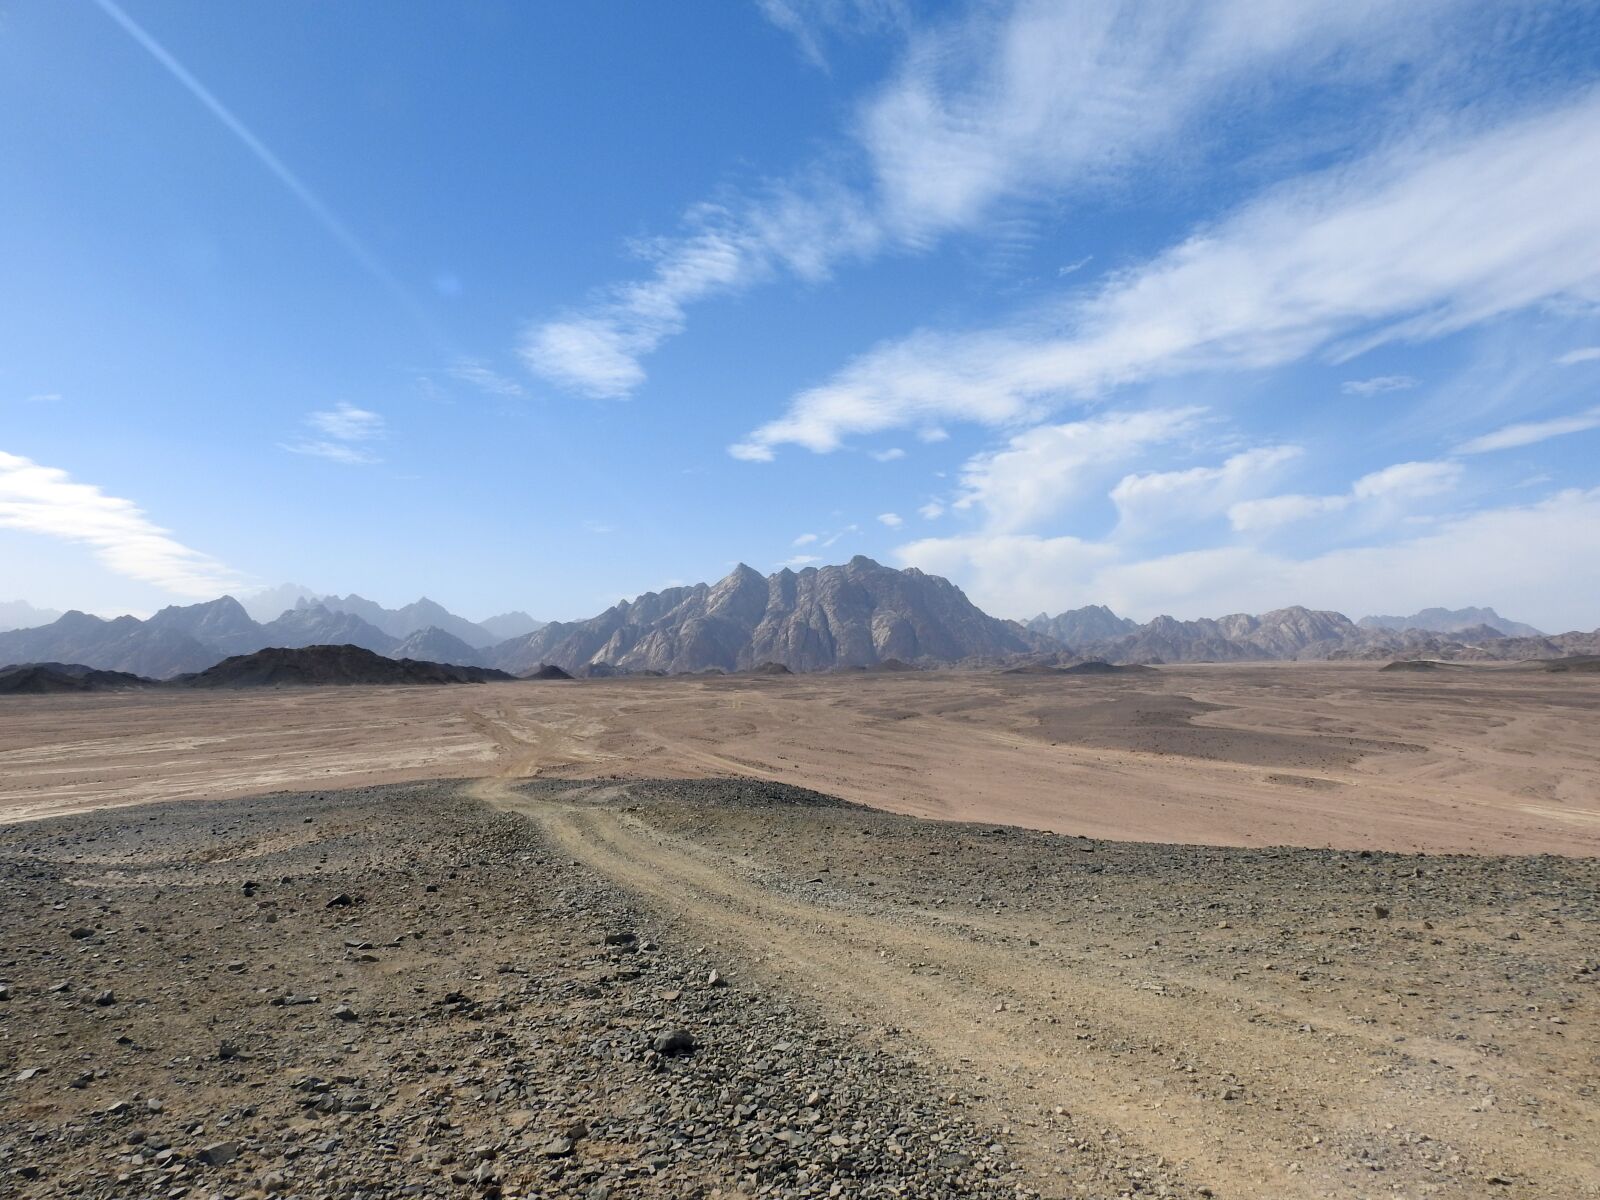 Nikon Coolpix P900 sample photo. Desert, sand, landscape photography